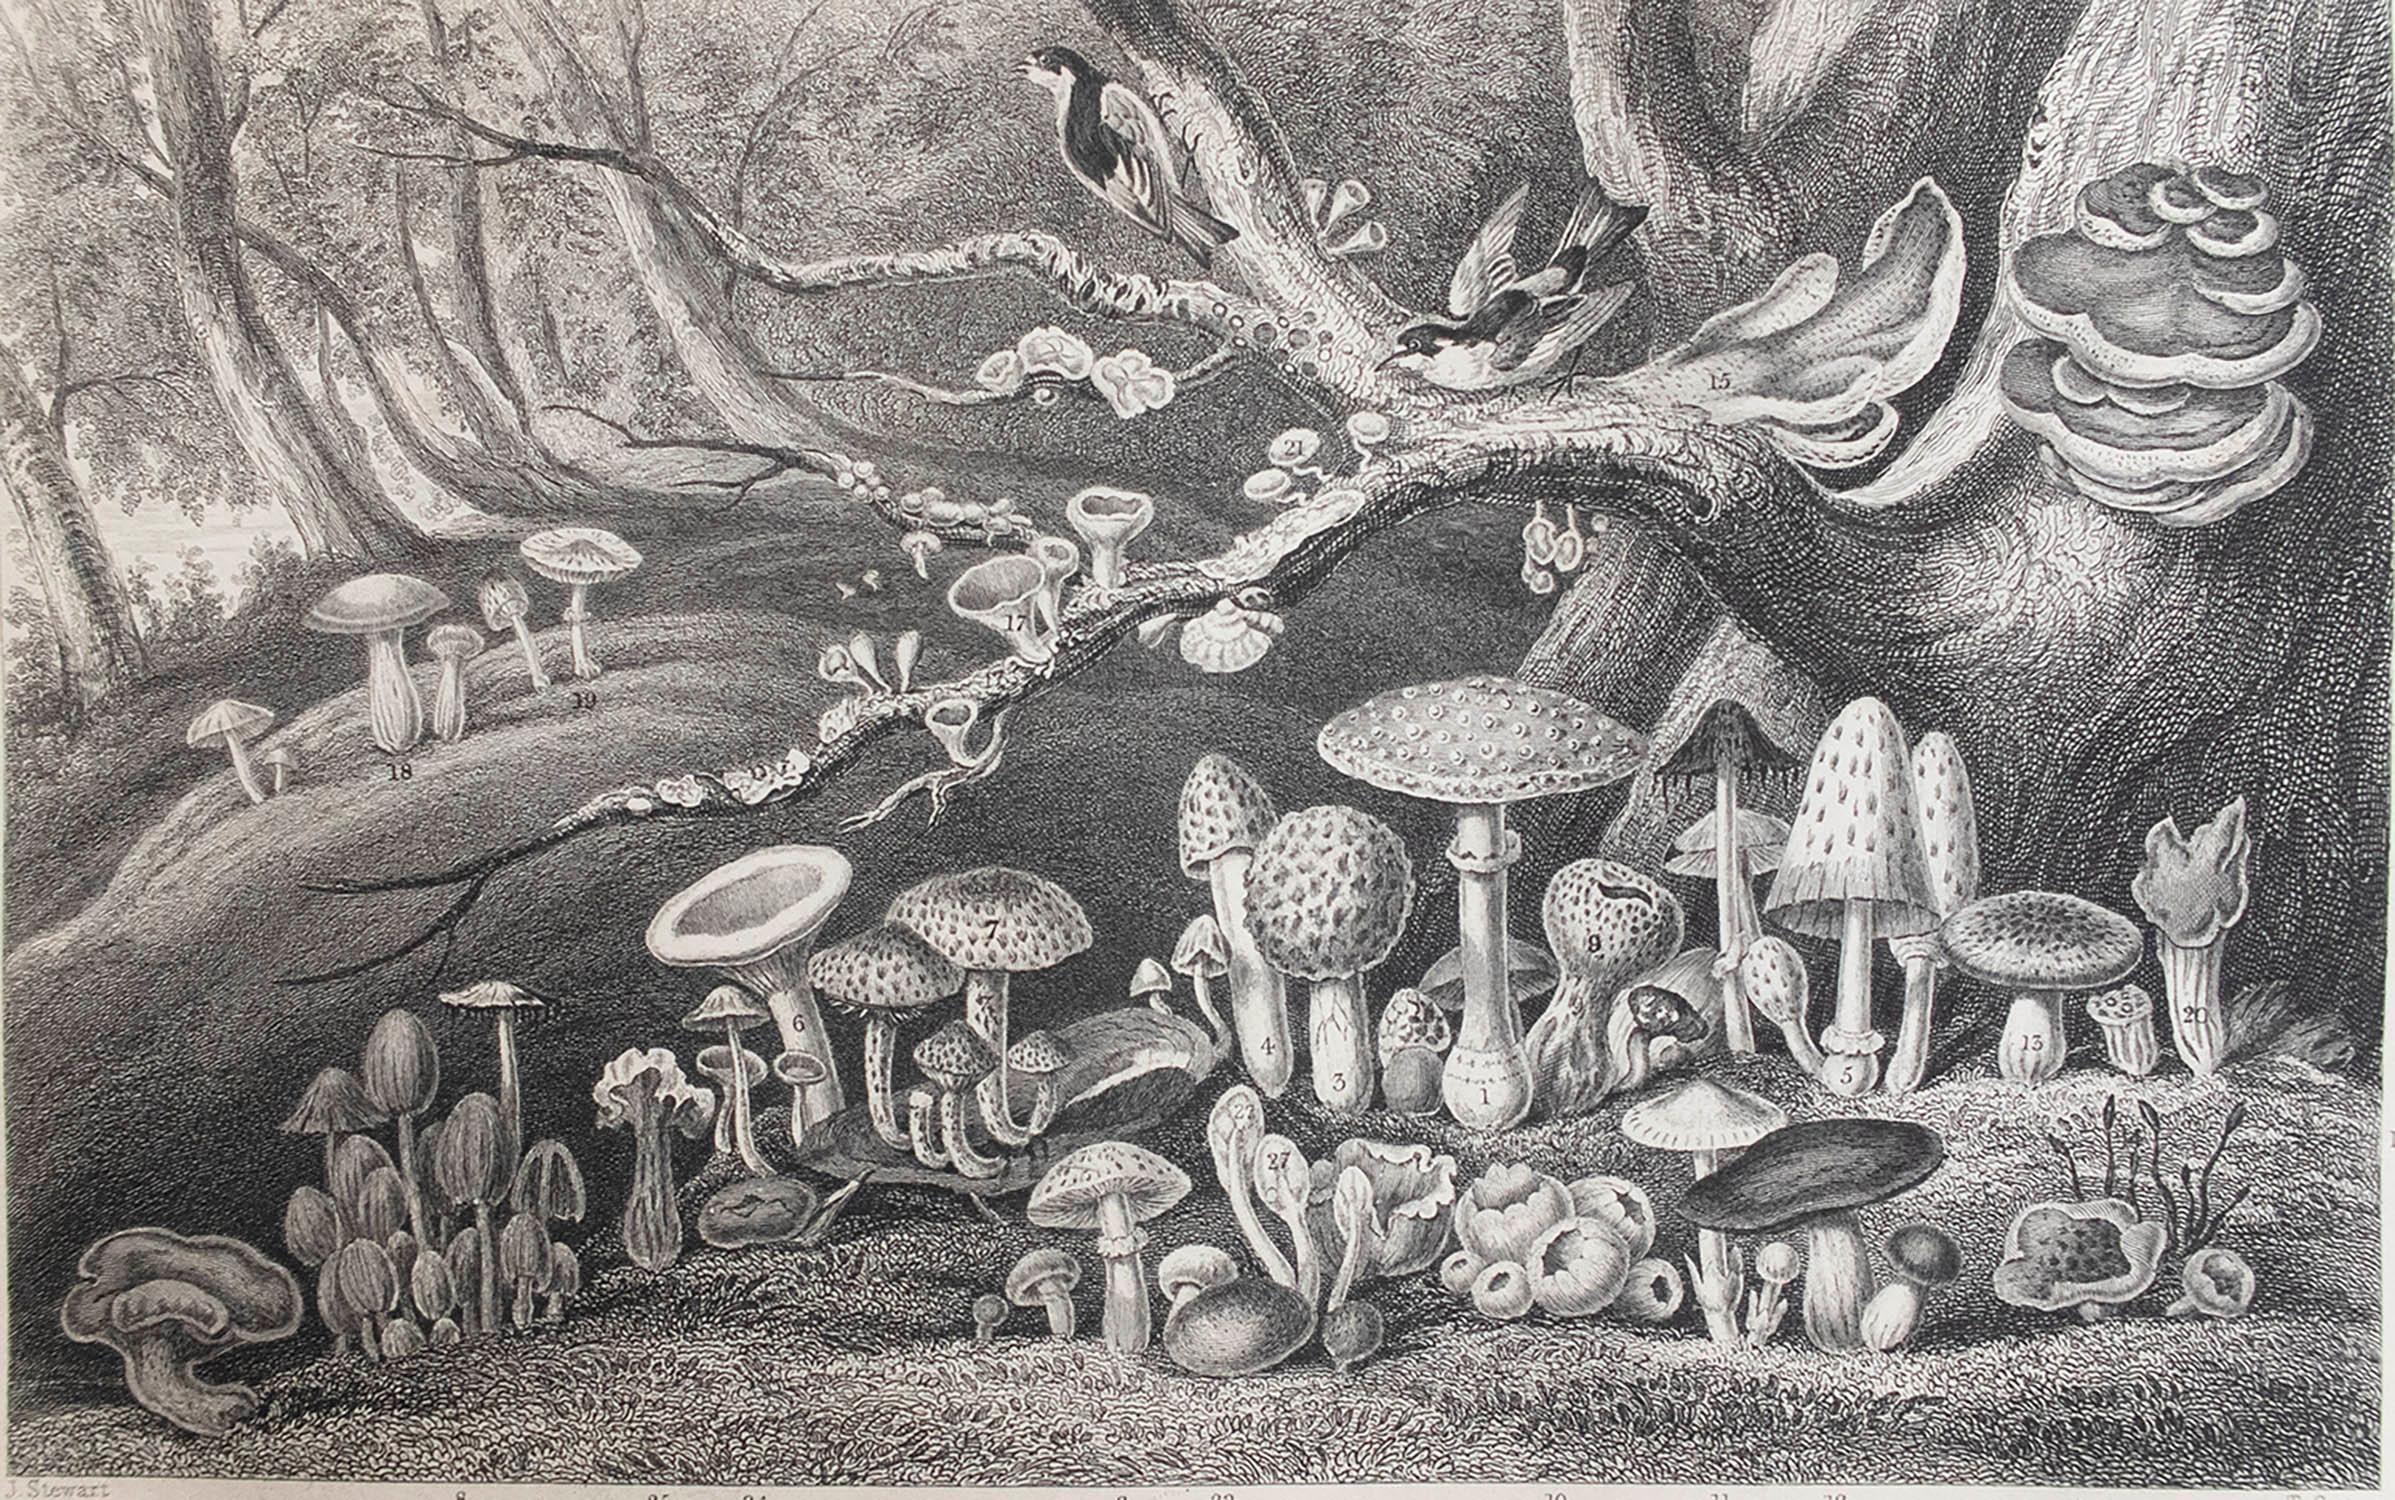 Tolles Bild von Pilzen

Stahlstich 

Veröffentlicht von Blackie. C.1870

Ungerahmt.

Kostenloser Versand.